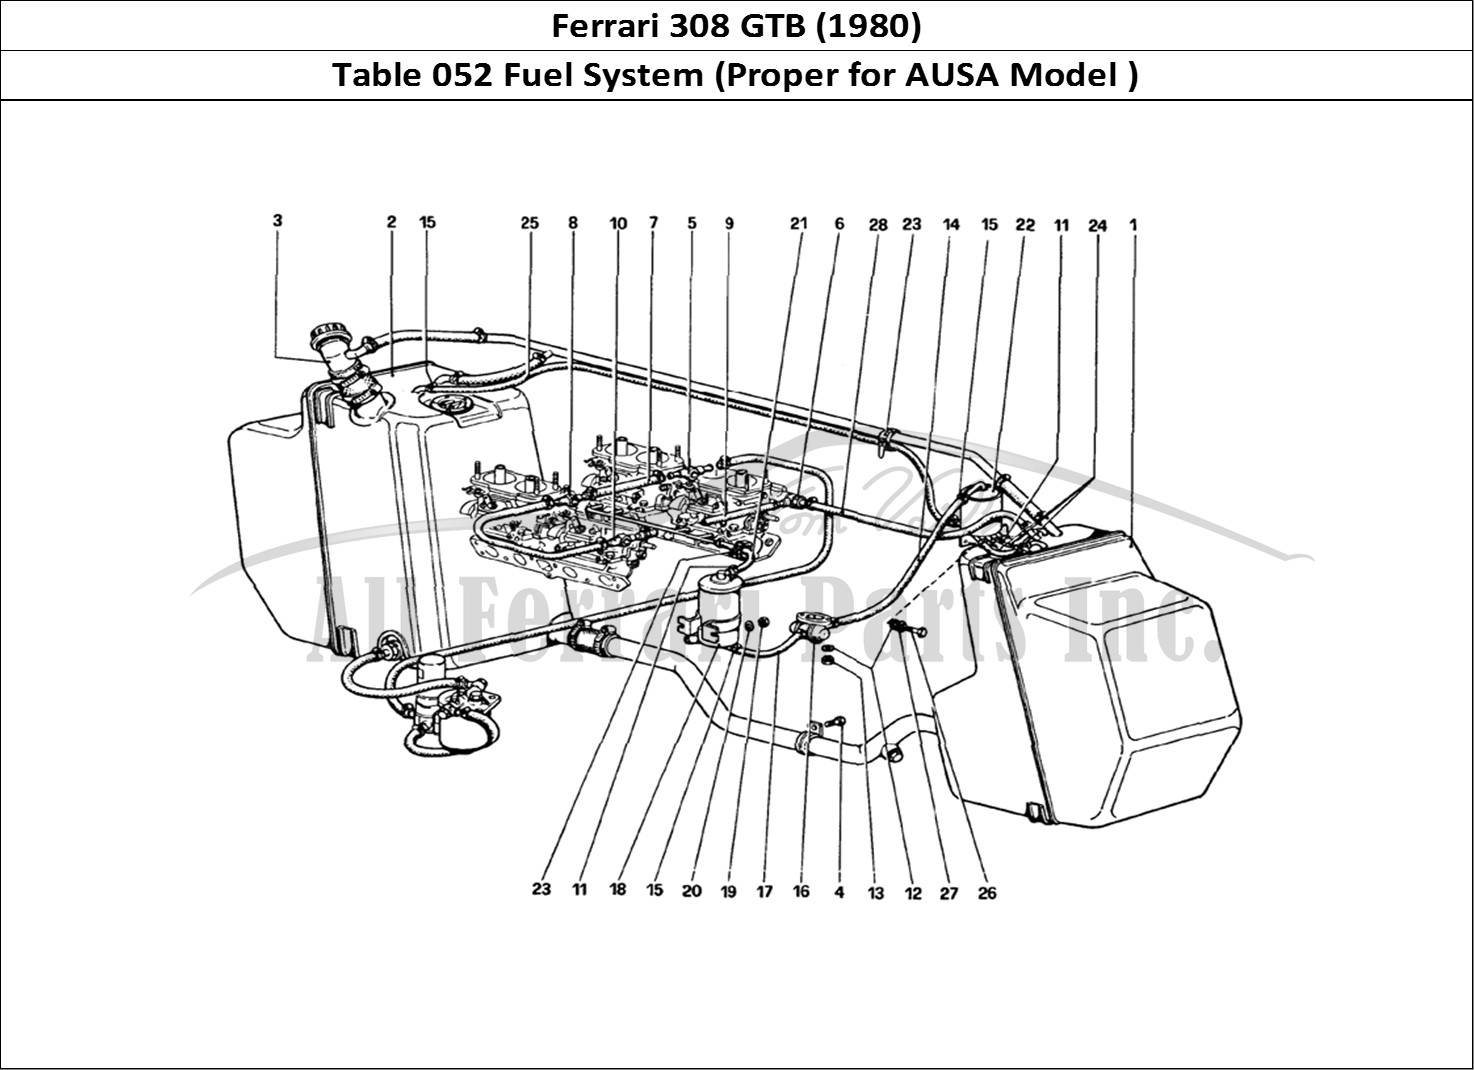 Ferrari Parts Ferrari 308 GTB (1980) Page 052 Fuel System (Variants for